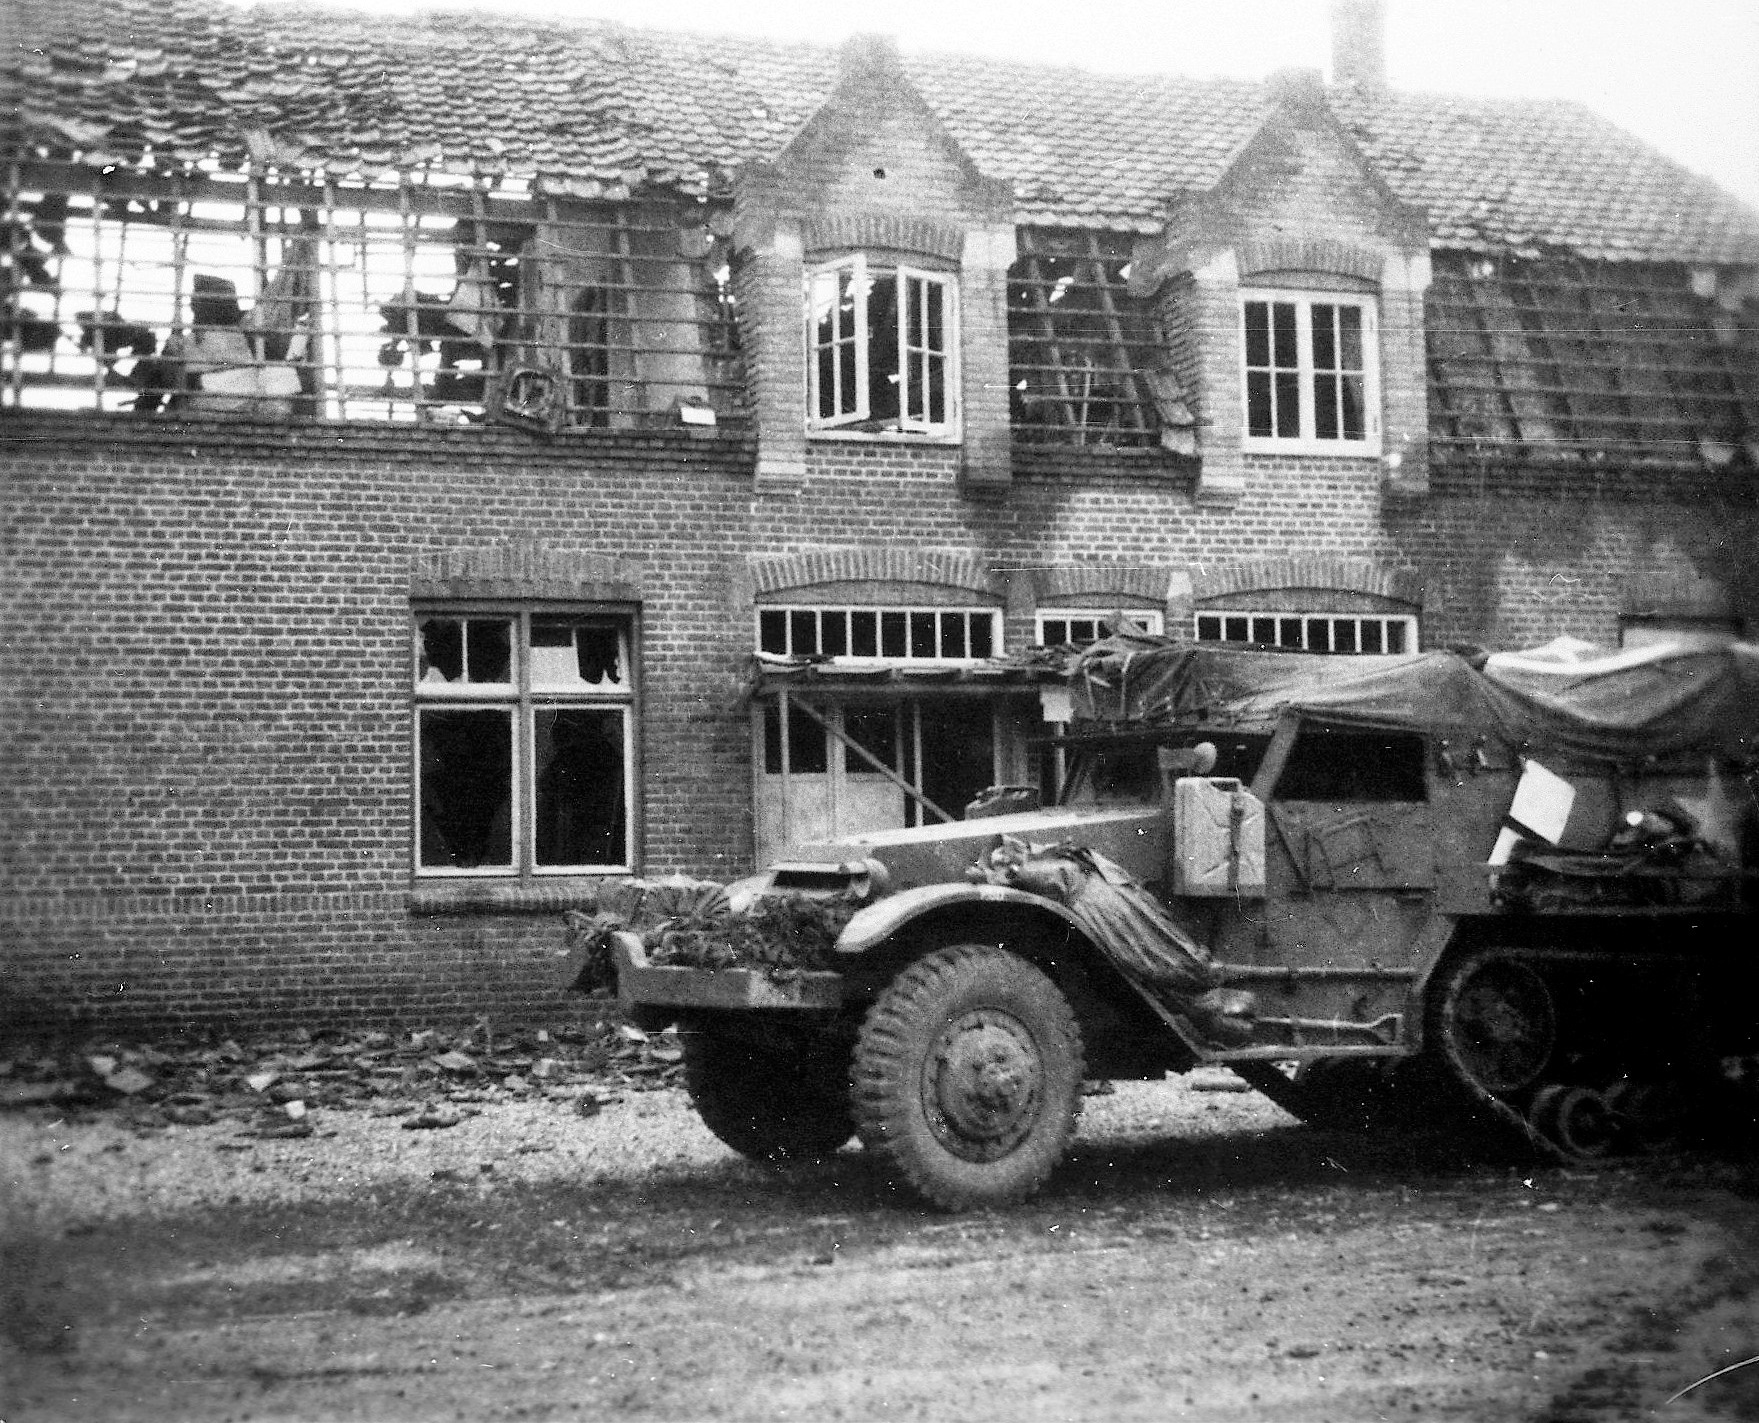 Oorlogsschade in Ysselsteyn 01-10-1944. Amerikaans rupsvoertuig bij de verwoeste zaak van Jansen. Bron Rooynet Venray